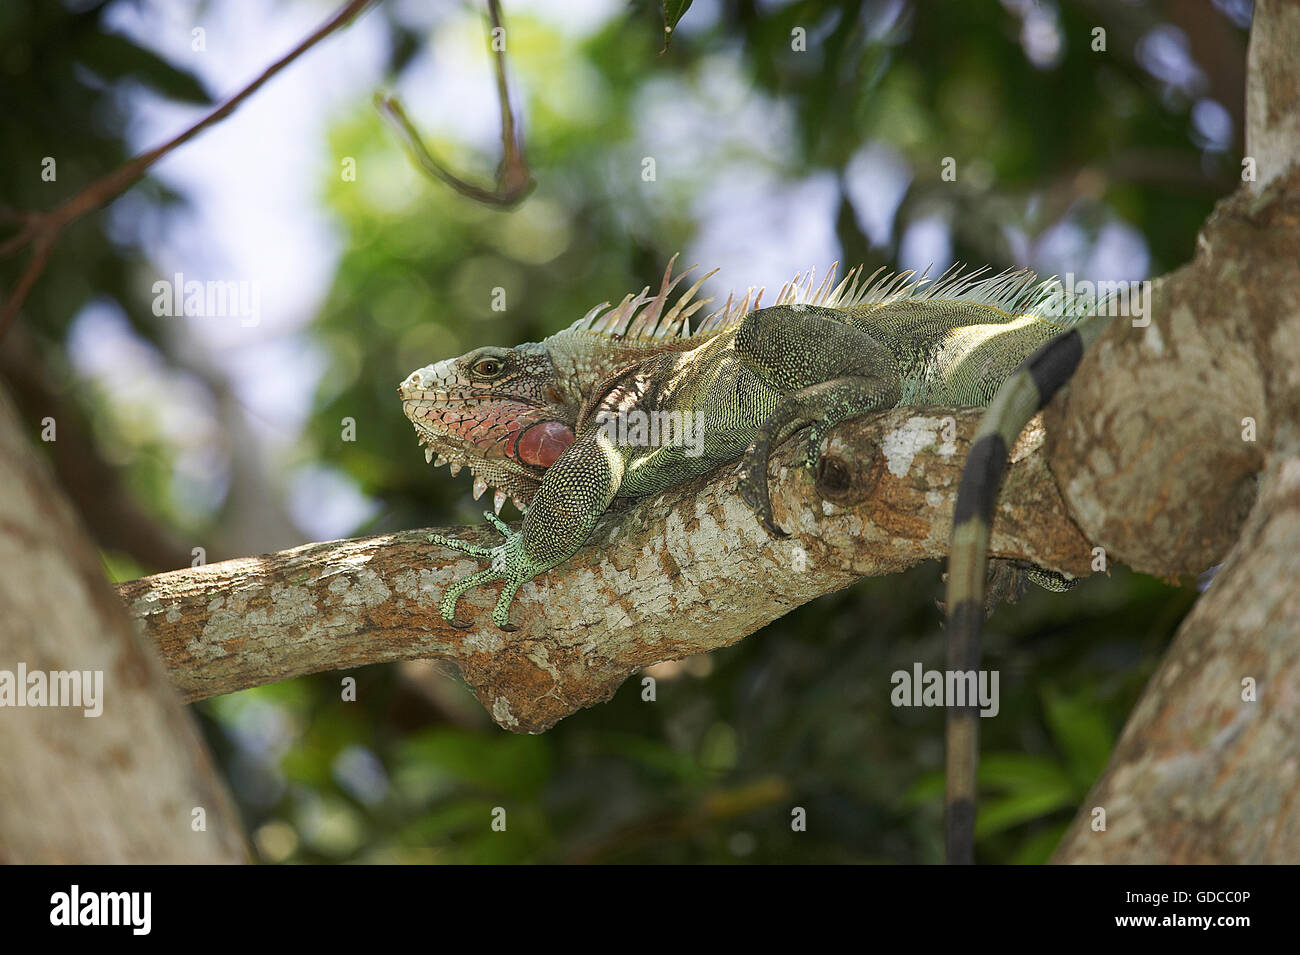 La iguana verde, Iguana iguana, Adulto posado en el árbol, Los Lianos en Venezuela Foto de stock